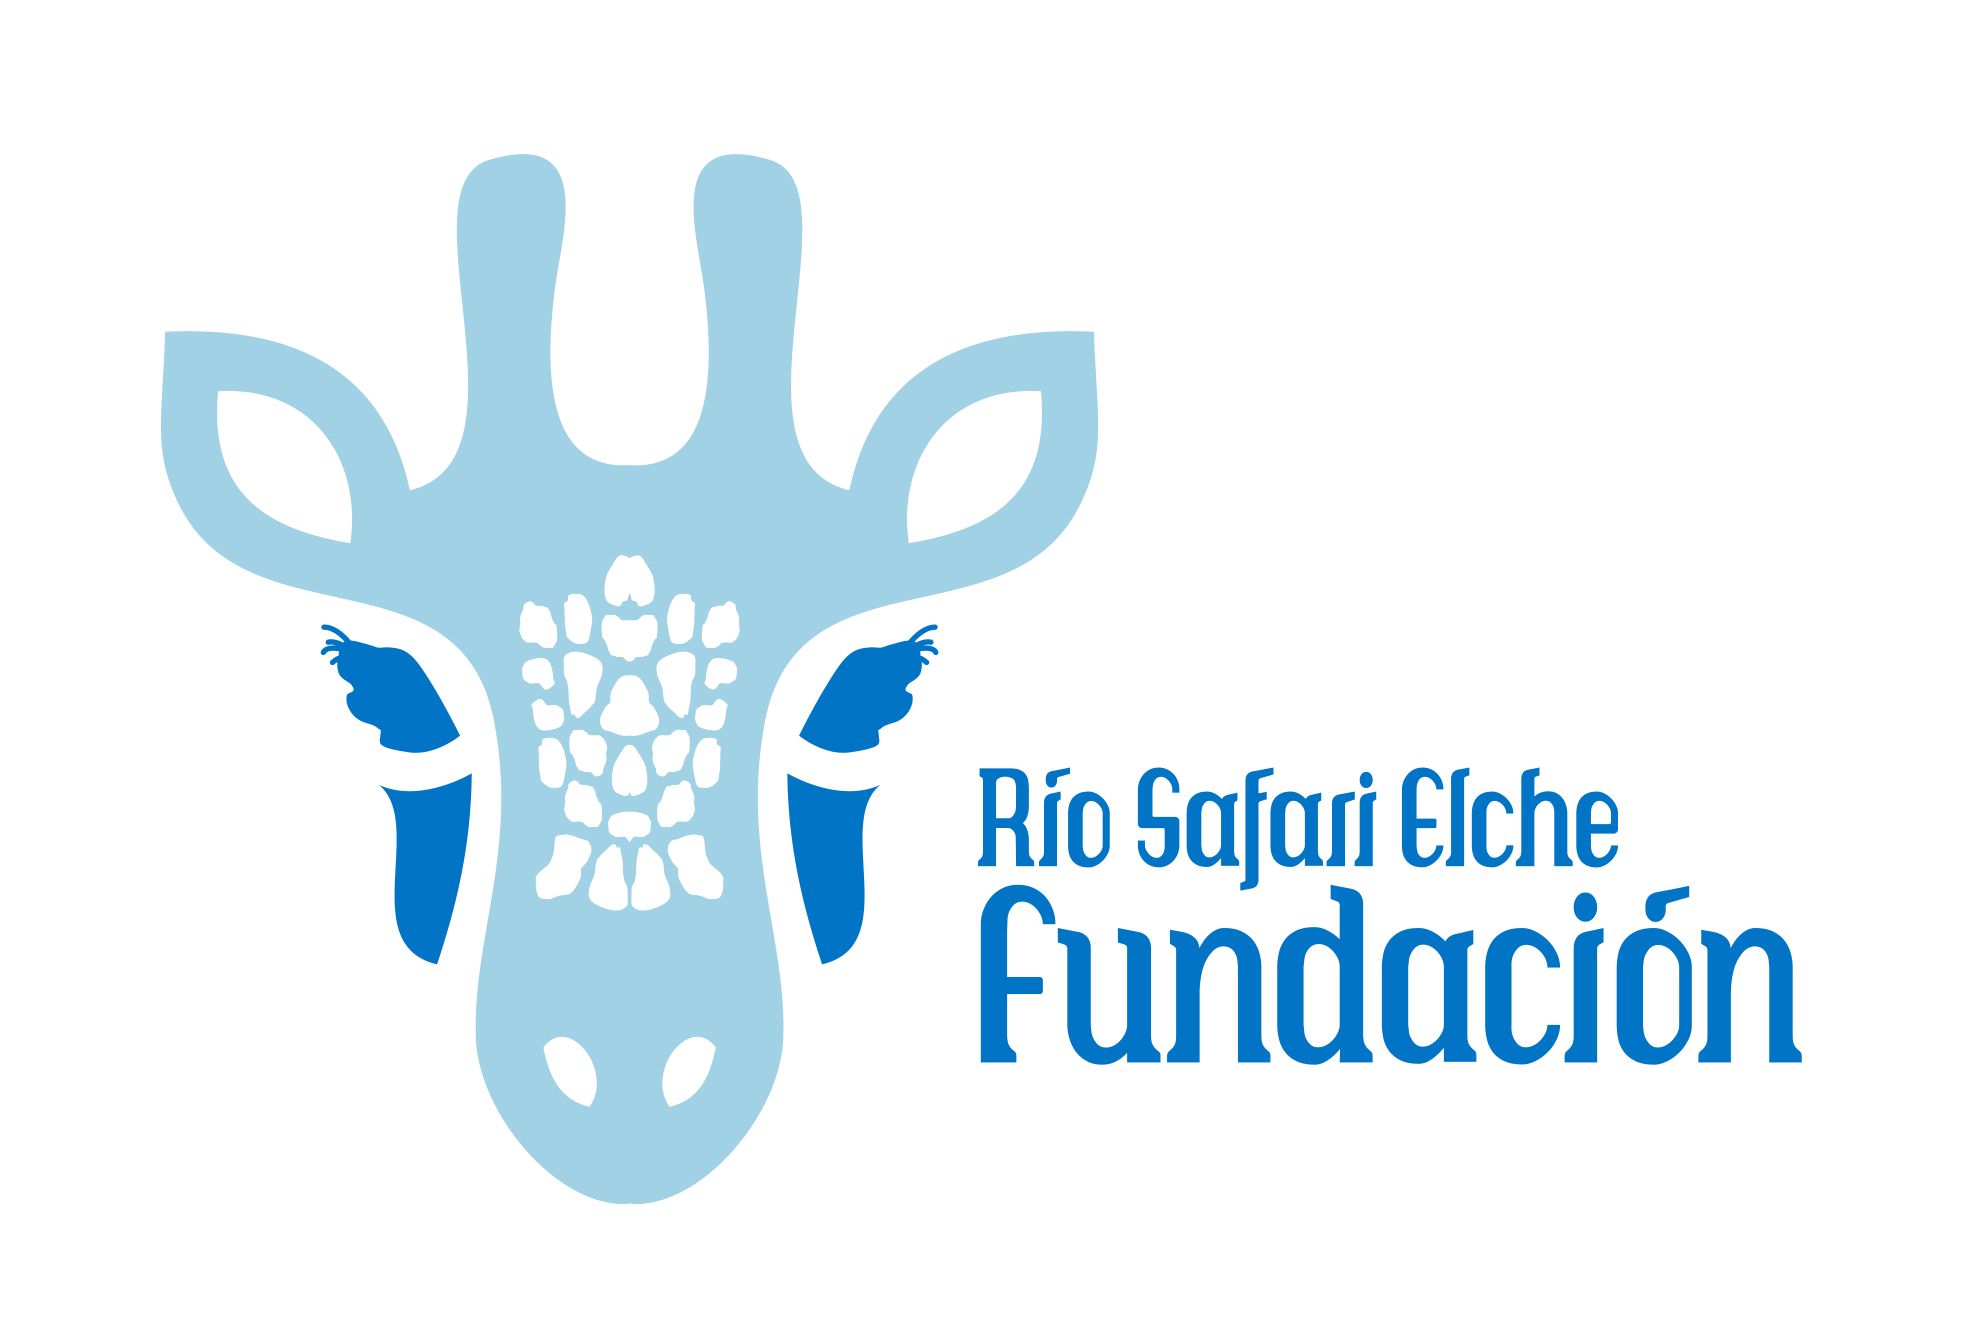 Fundación Rio Safari